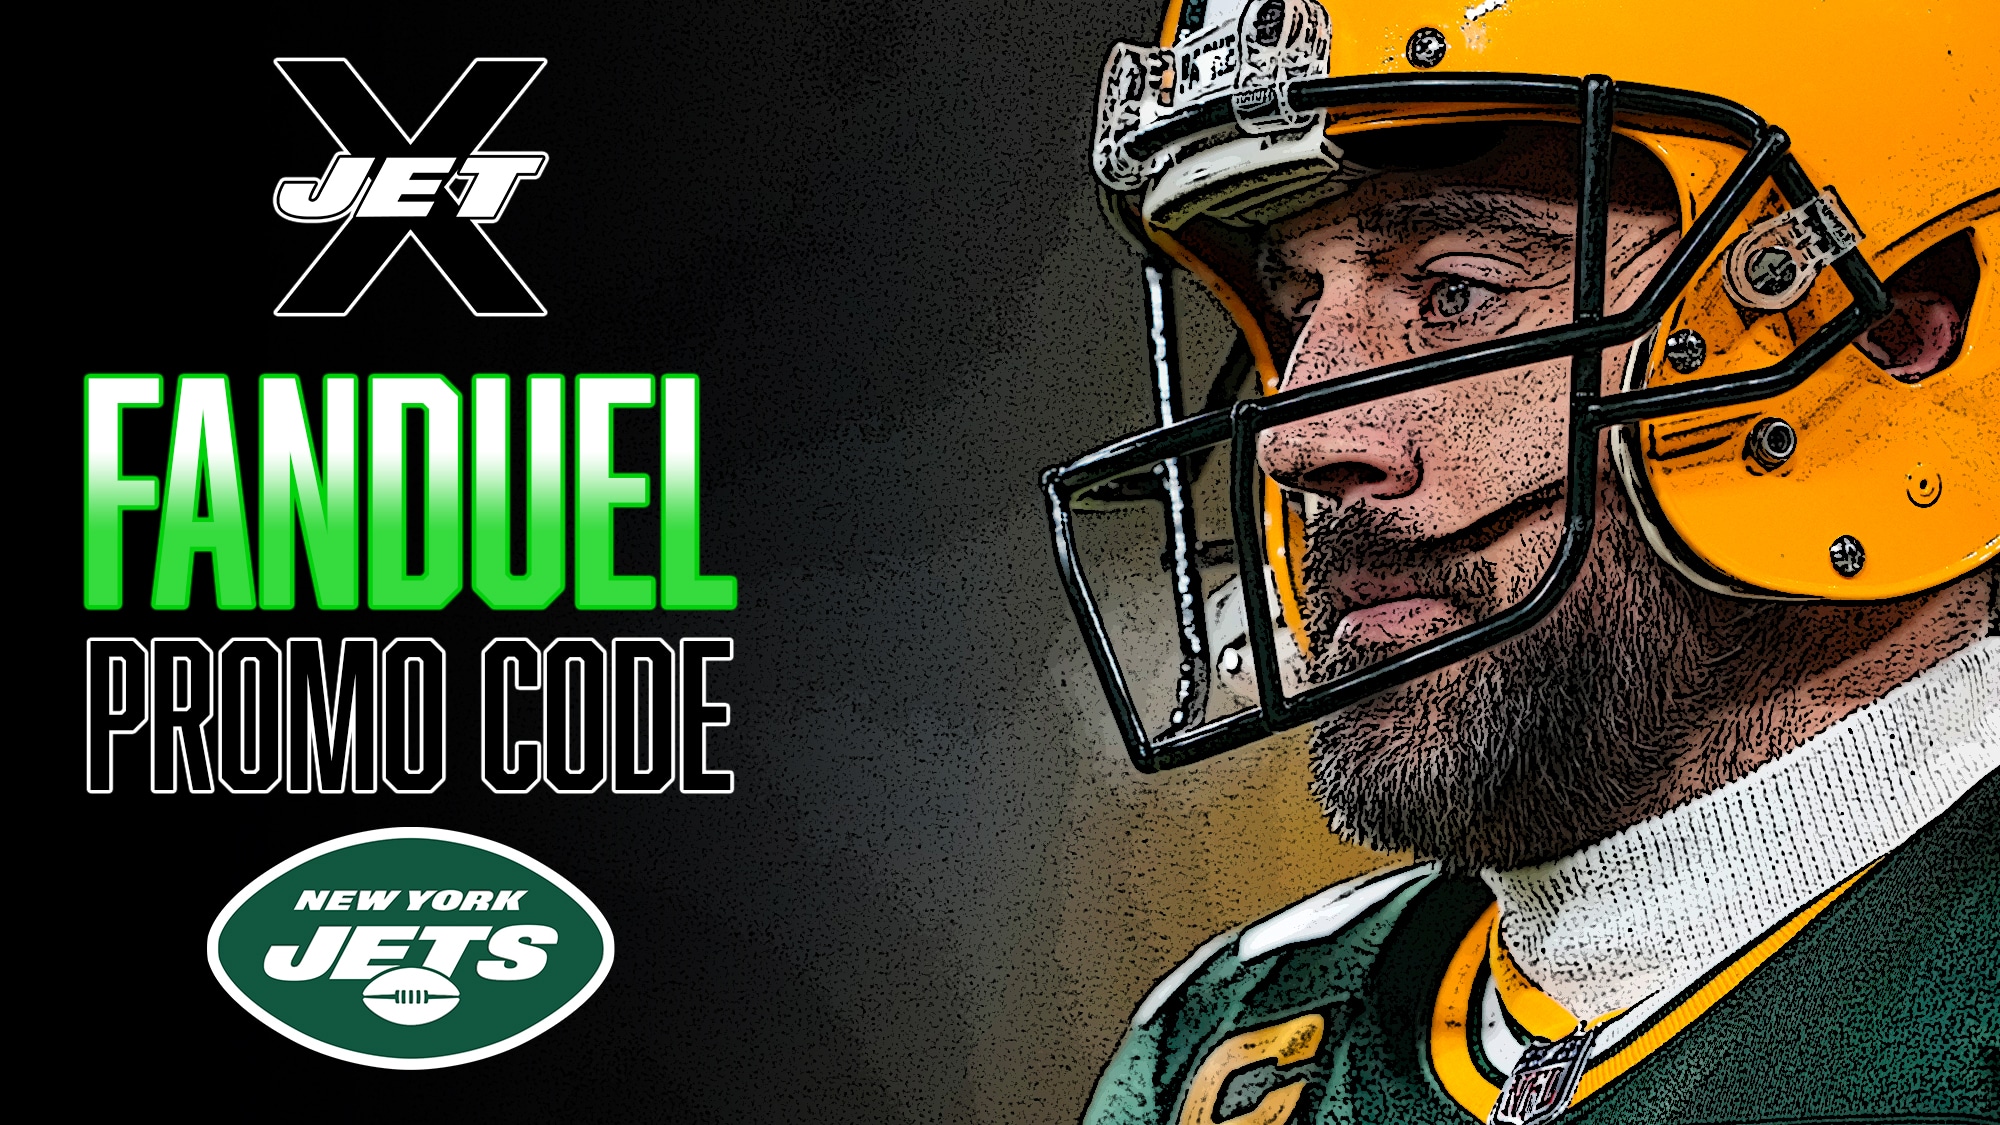 FanDuel Promo Code, Aaron Rodgers, New York Jets